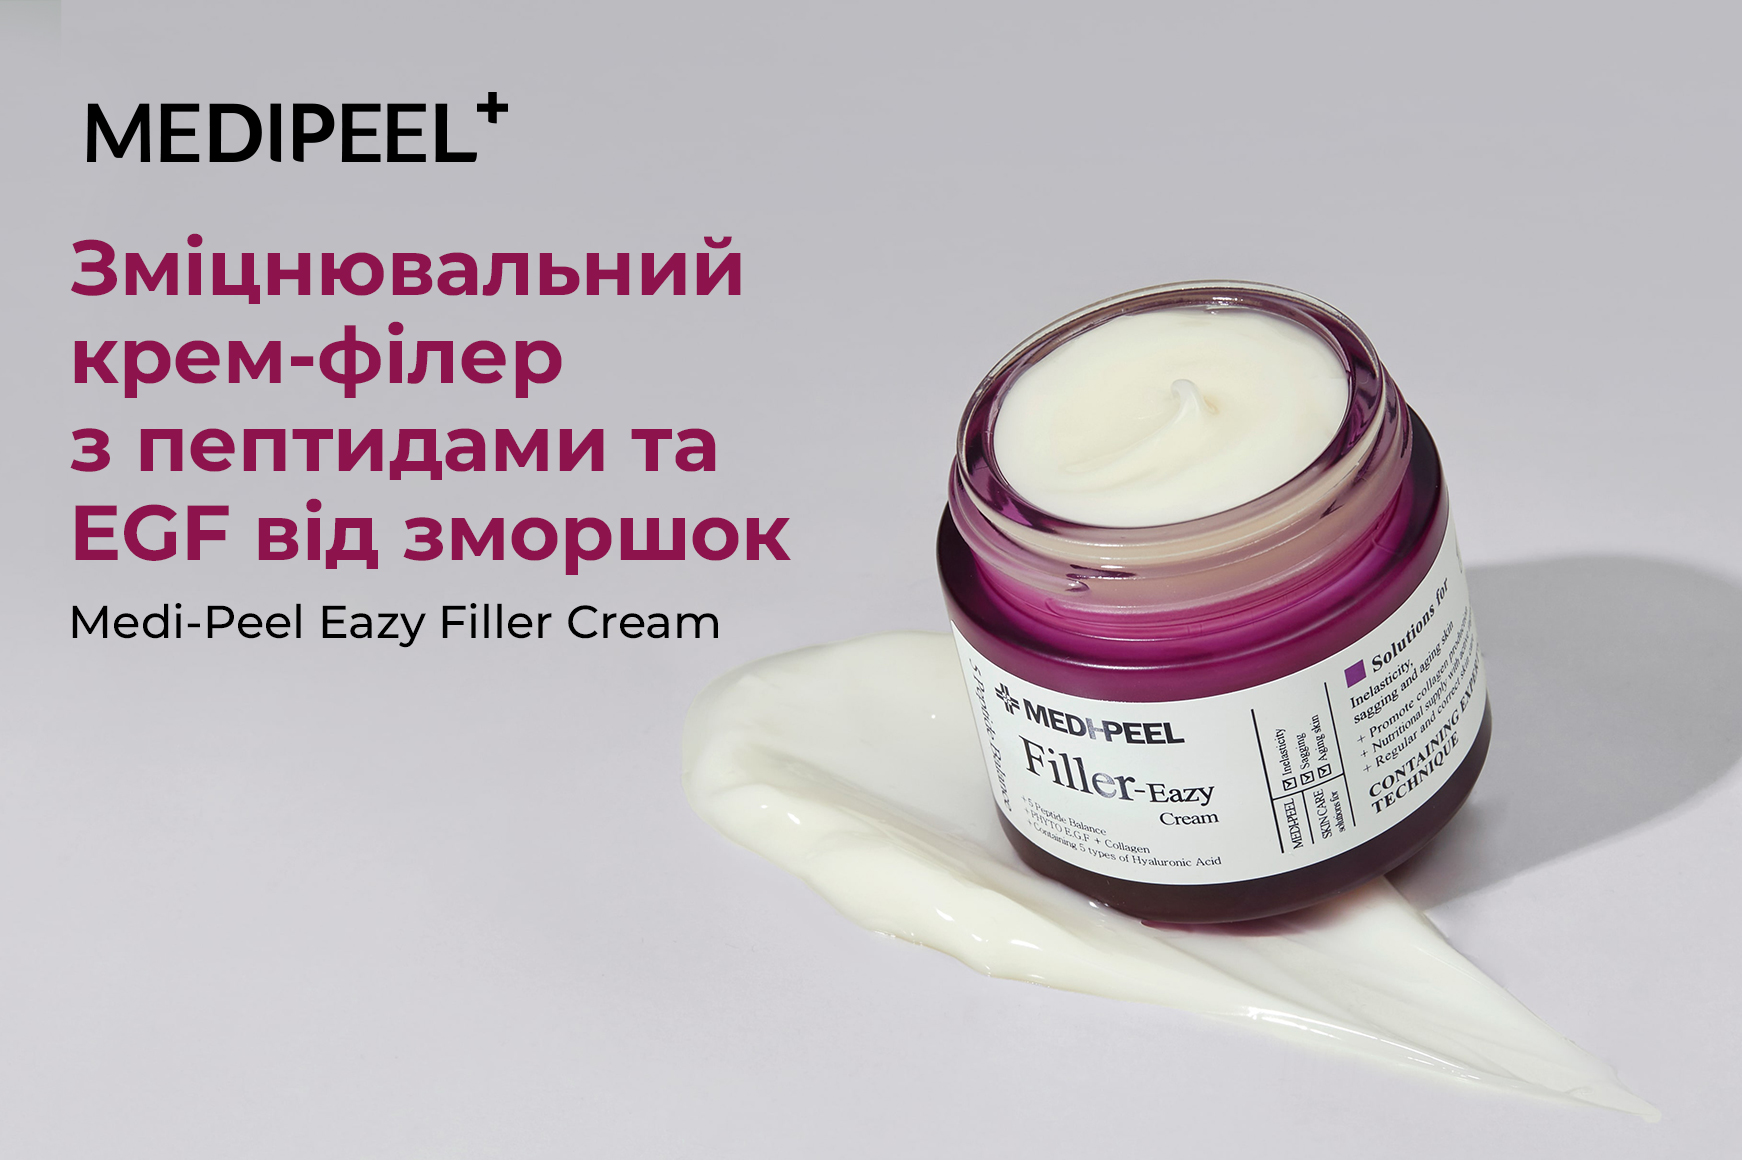 Medi-Peel Filler Eazy Cream: Средство против морщин с пептидами и EGF